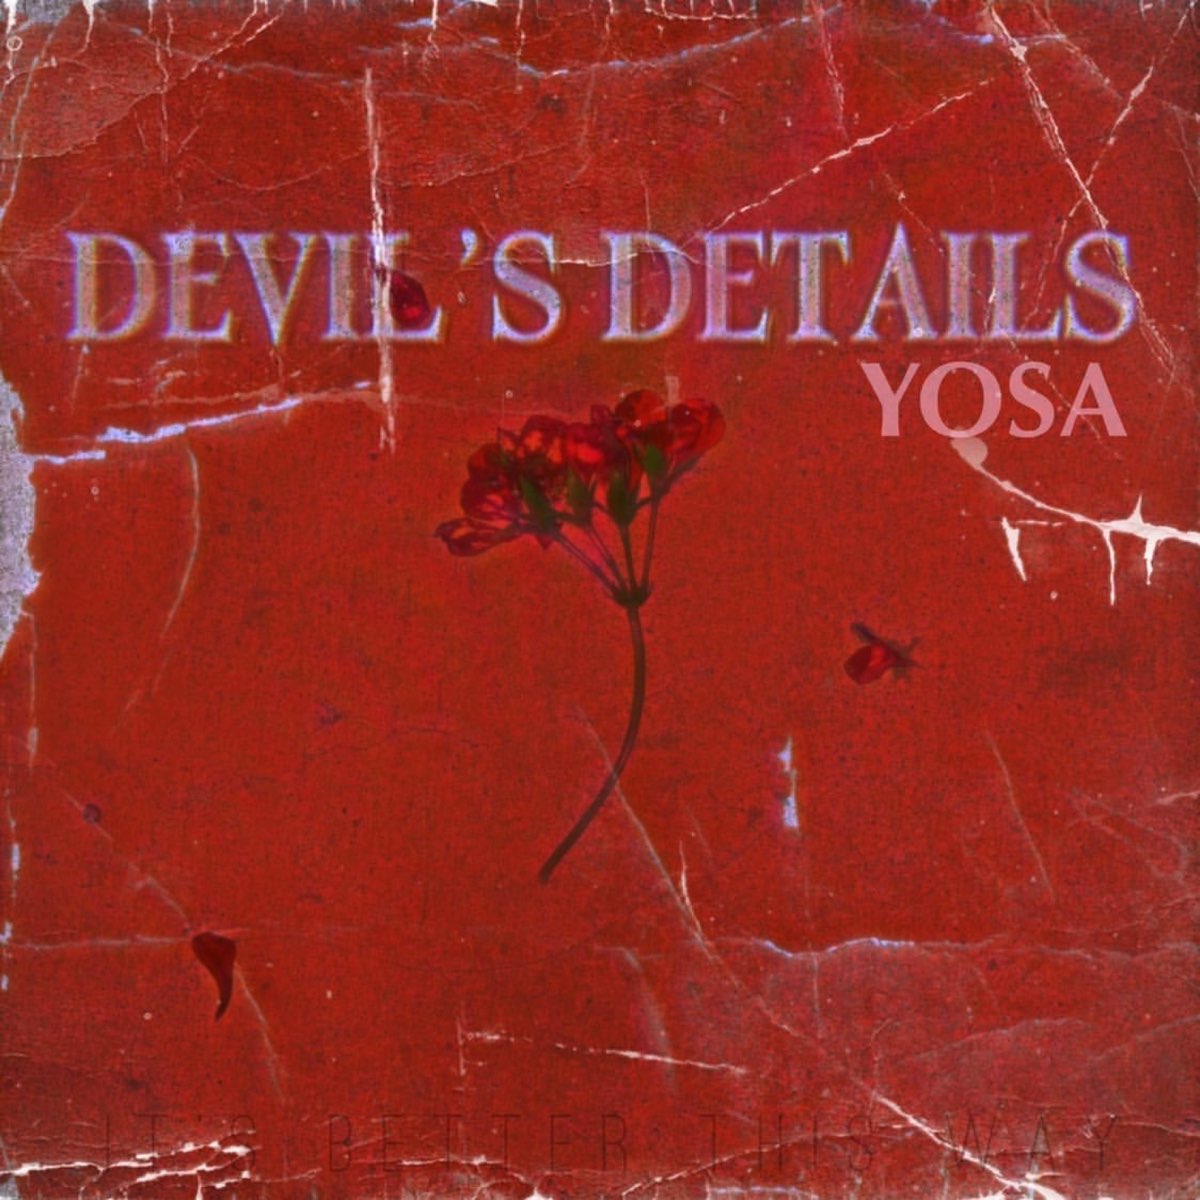 Devil's details. Devils in my details OHGR. Devil in details.